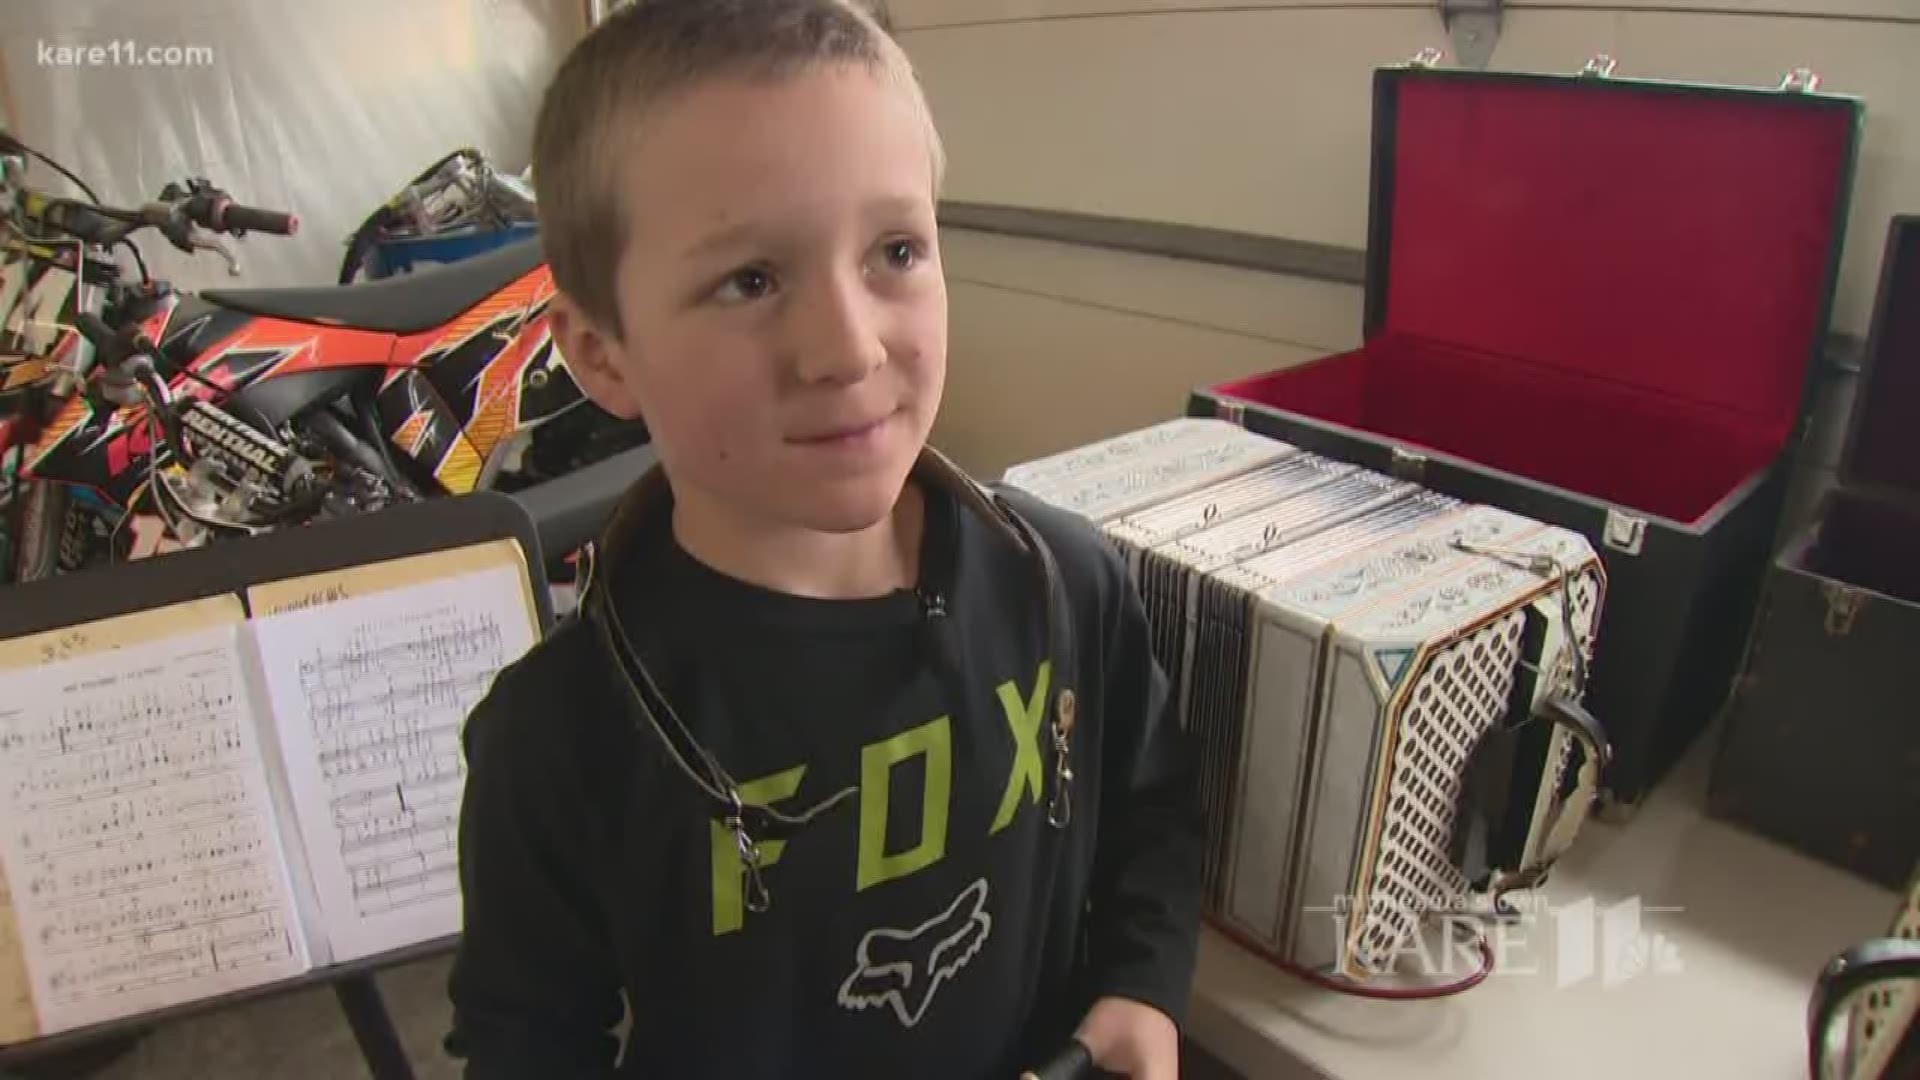 Young boy rocks concertina and lederhosen